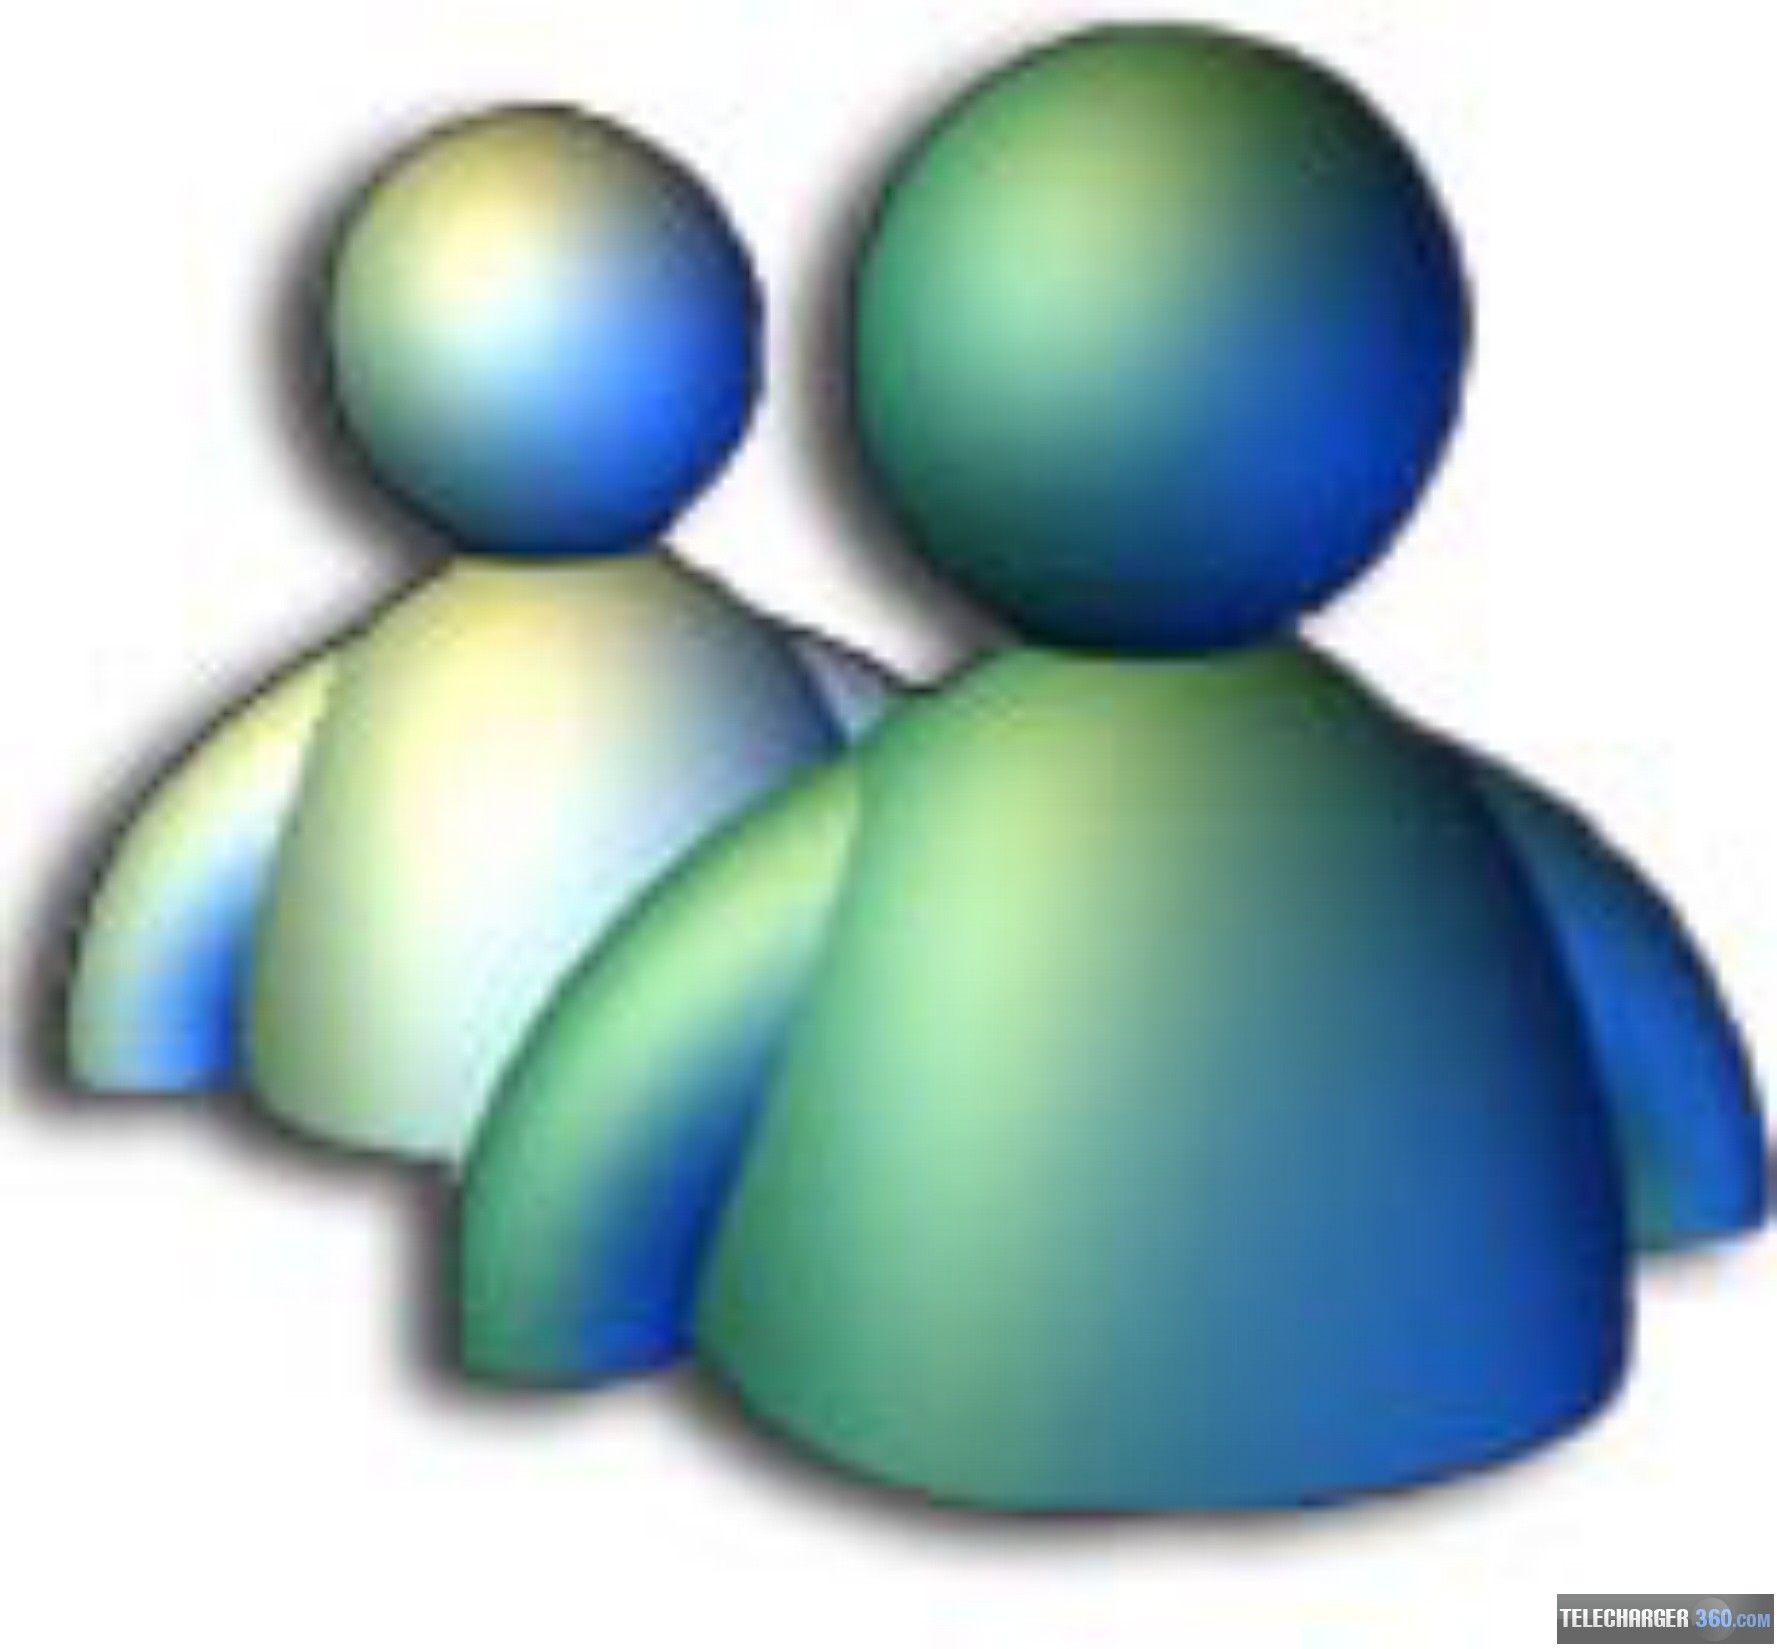 Windows Messenger Logo - Windows messenger Logos